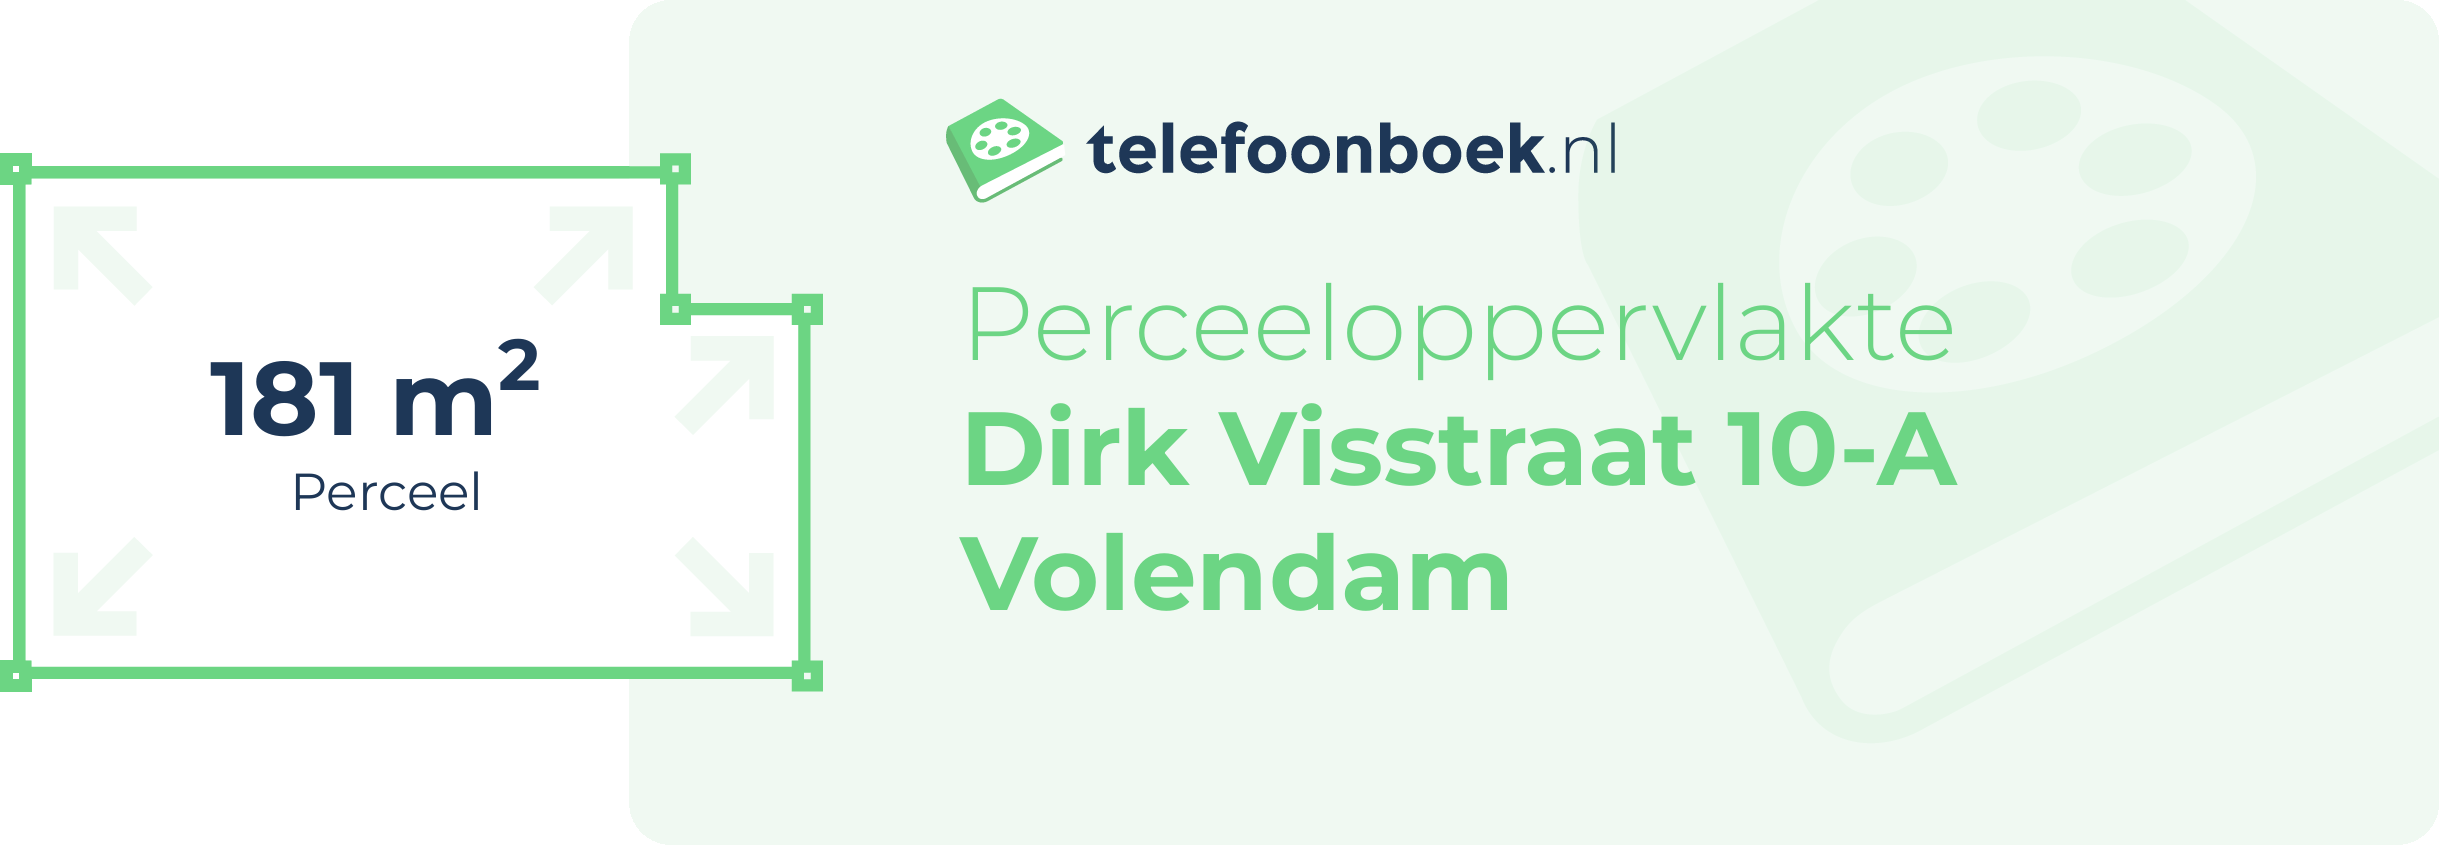 Perceeloppervlakte Dirk Visstraat 10-A Volendam